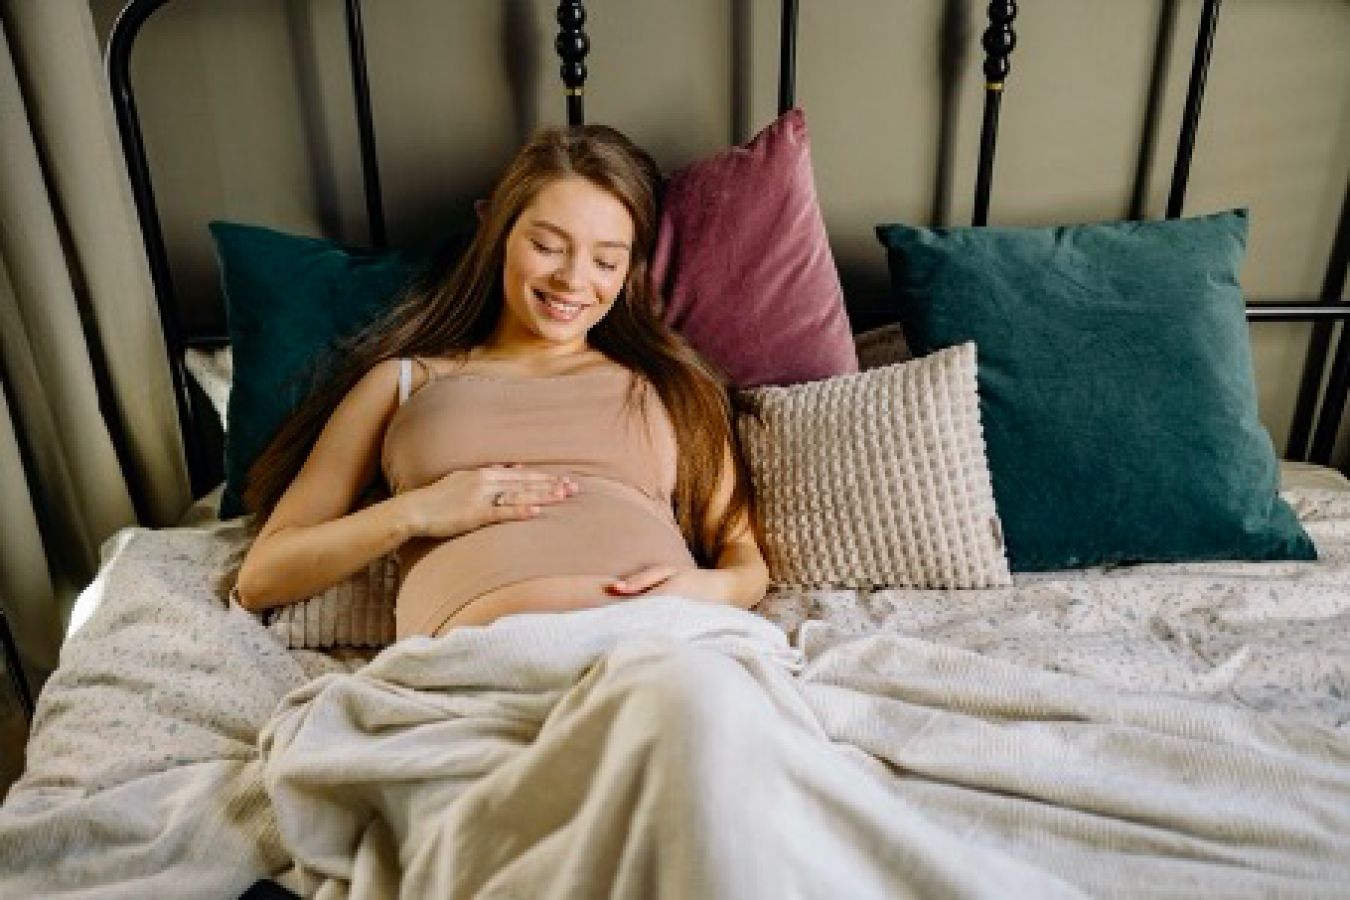 Již v těhotenství je nutné se vypořádat s nedostatkem spánku